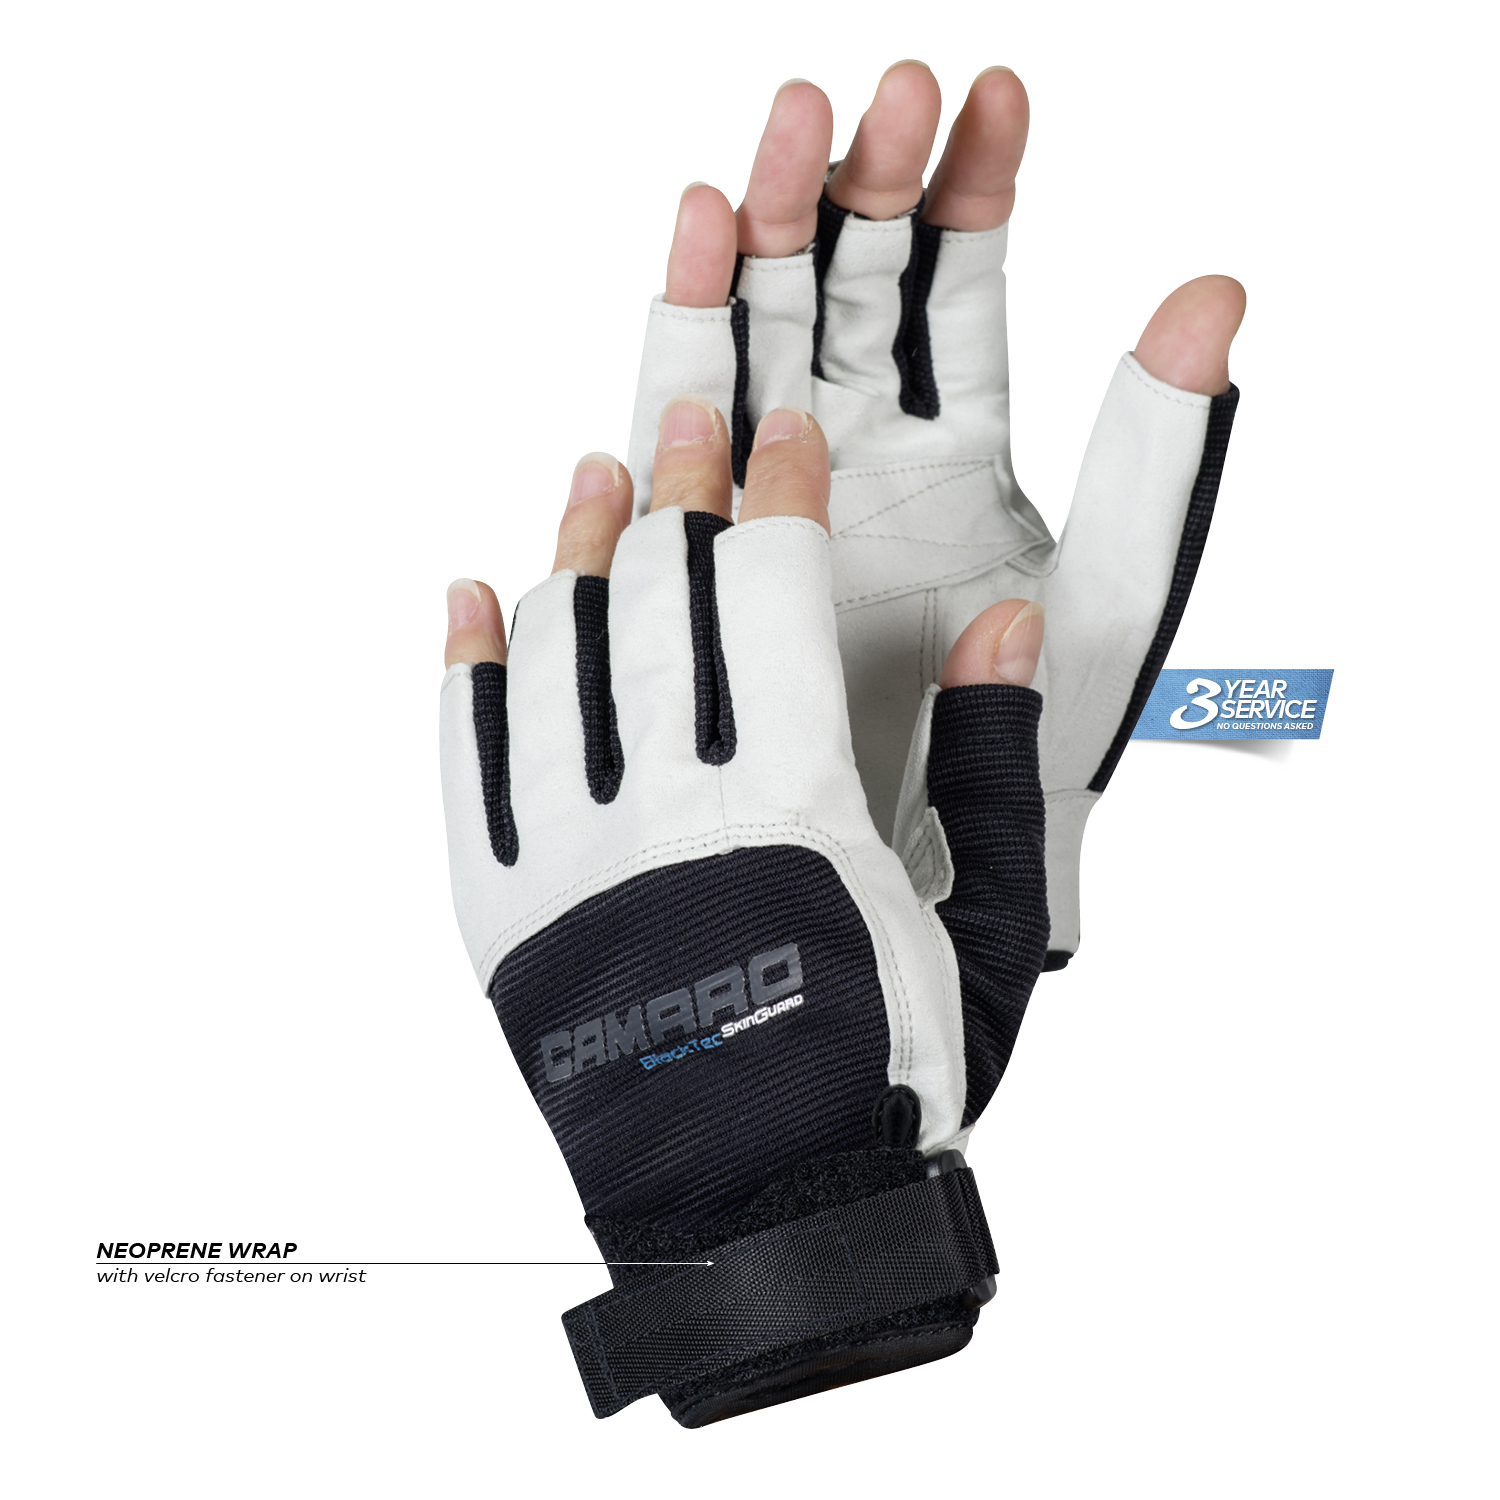 Skintex shortfinger gloves